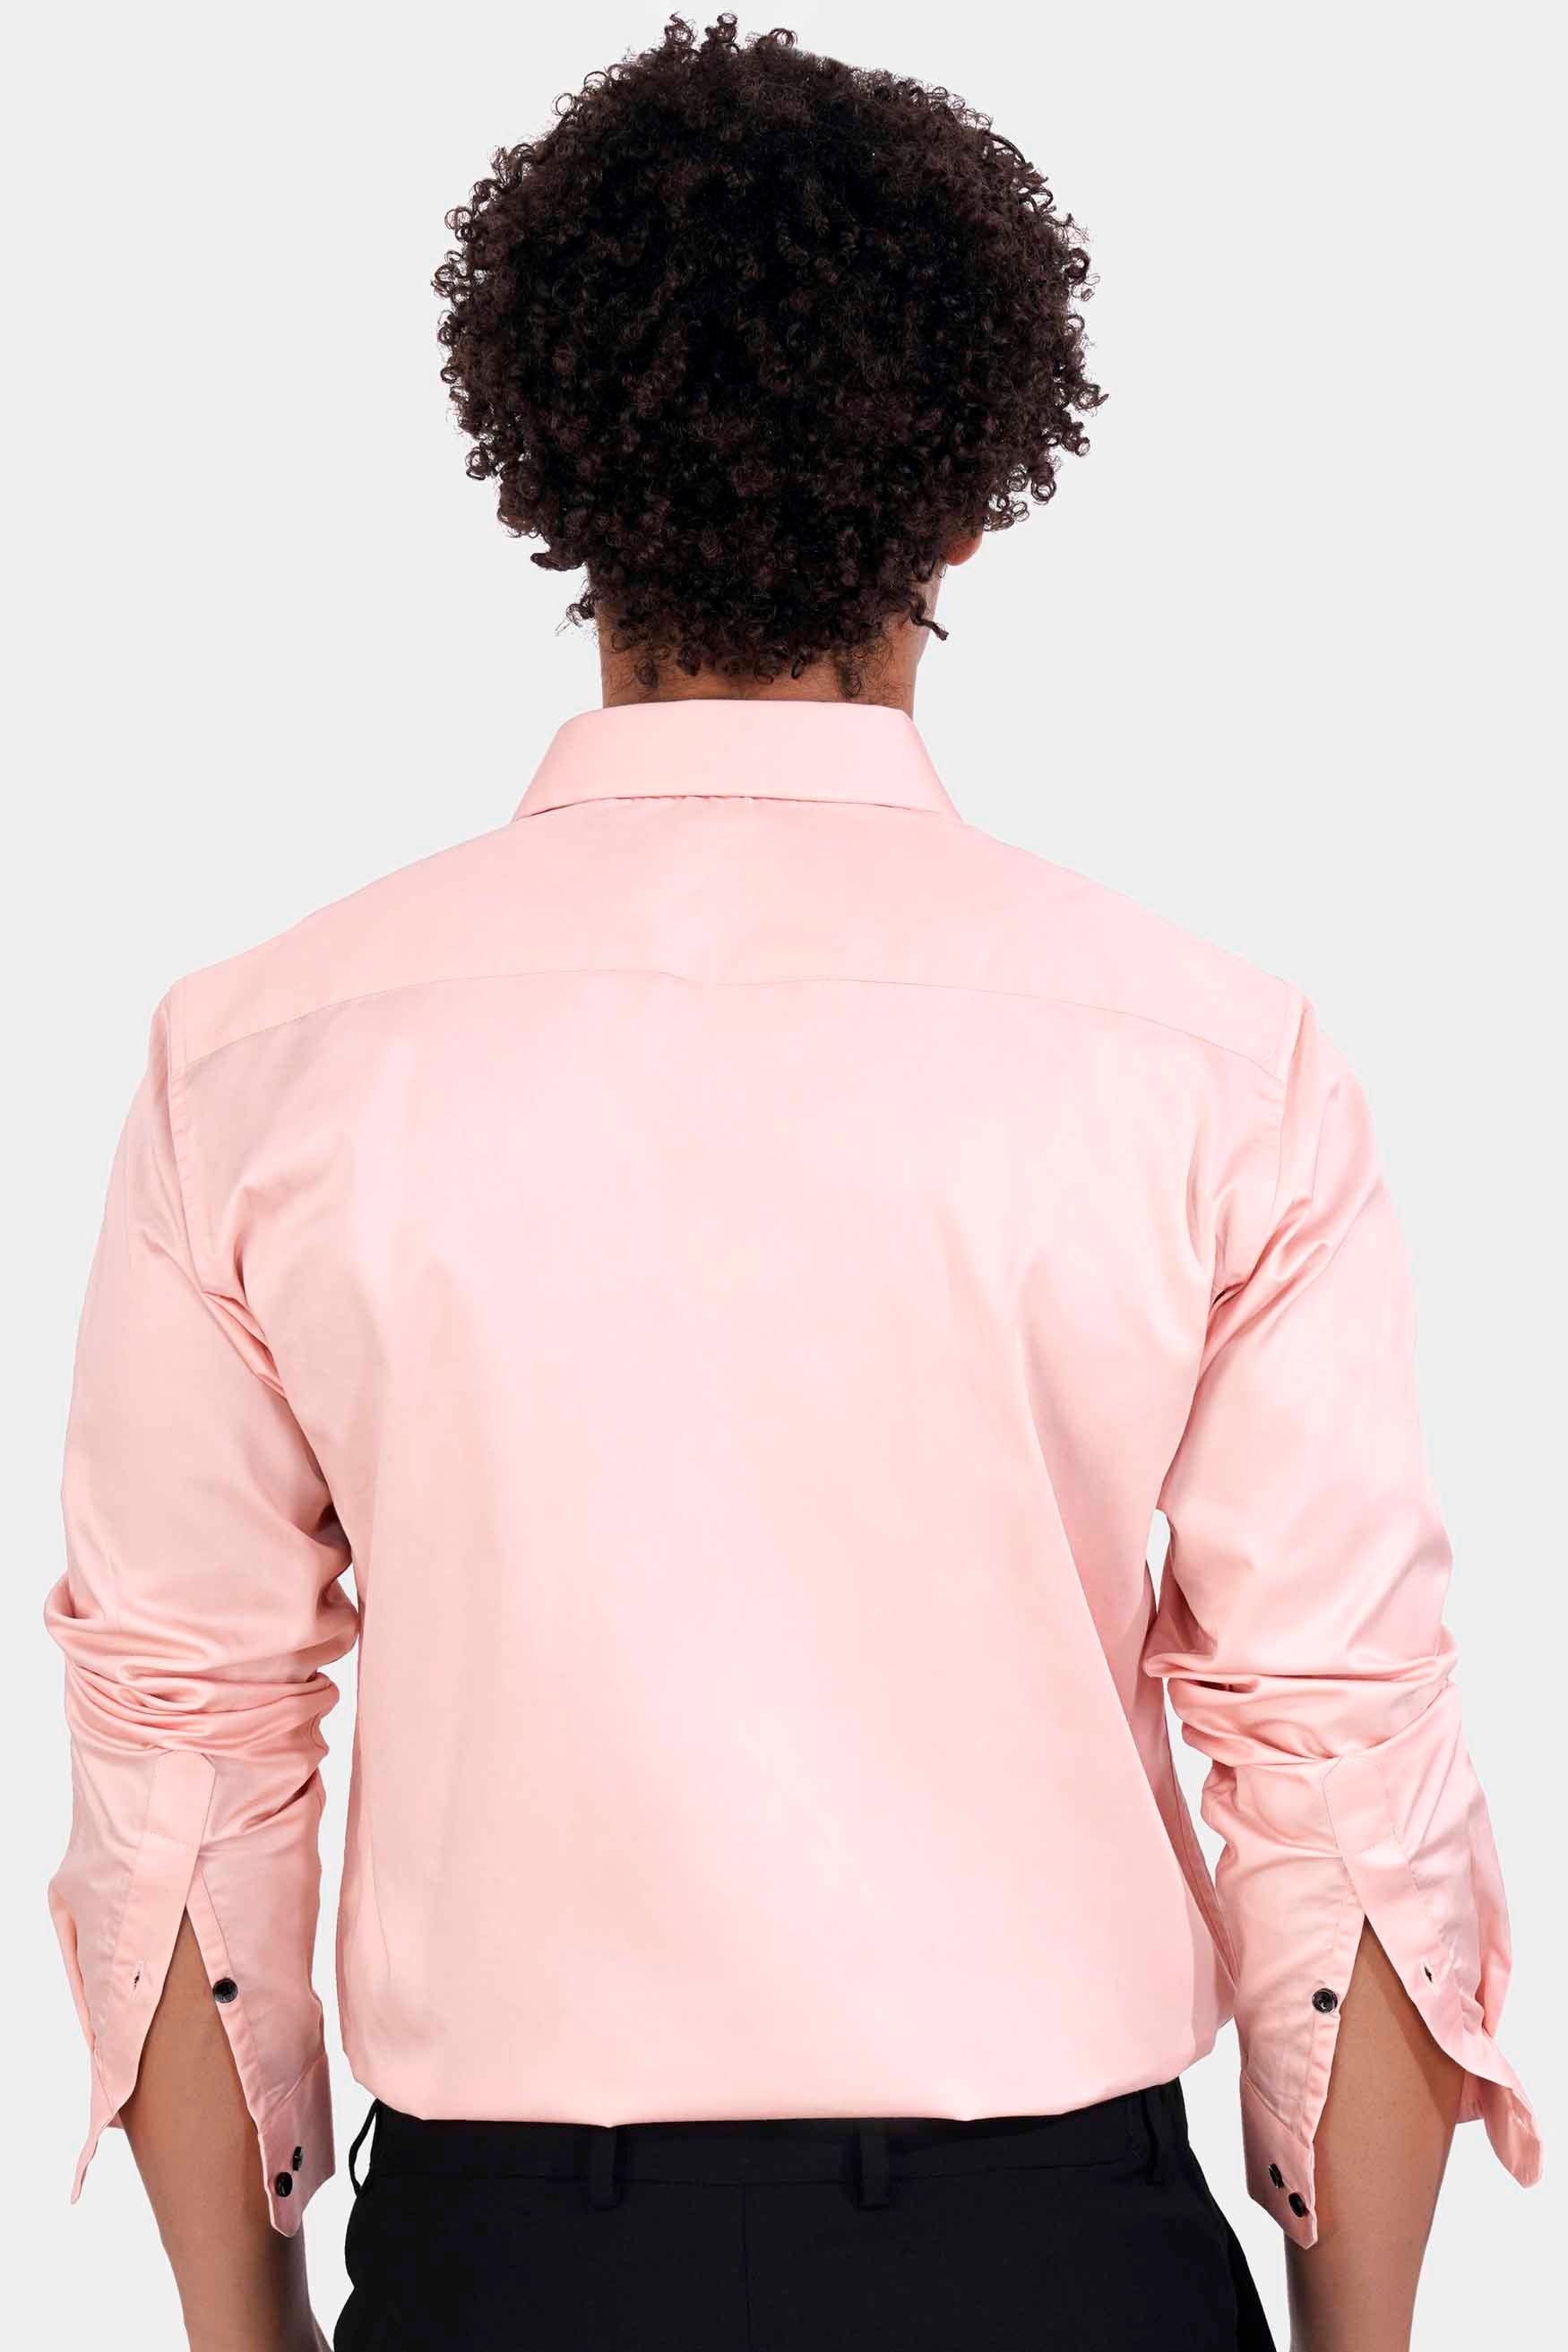 Crepe Peach Subtle Sheen Super Soft Premium Cotton Tuxedo Shirt